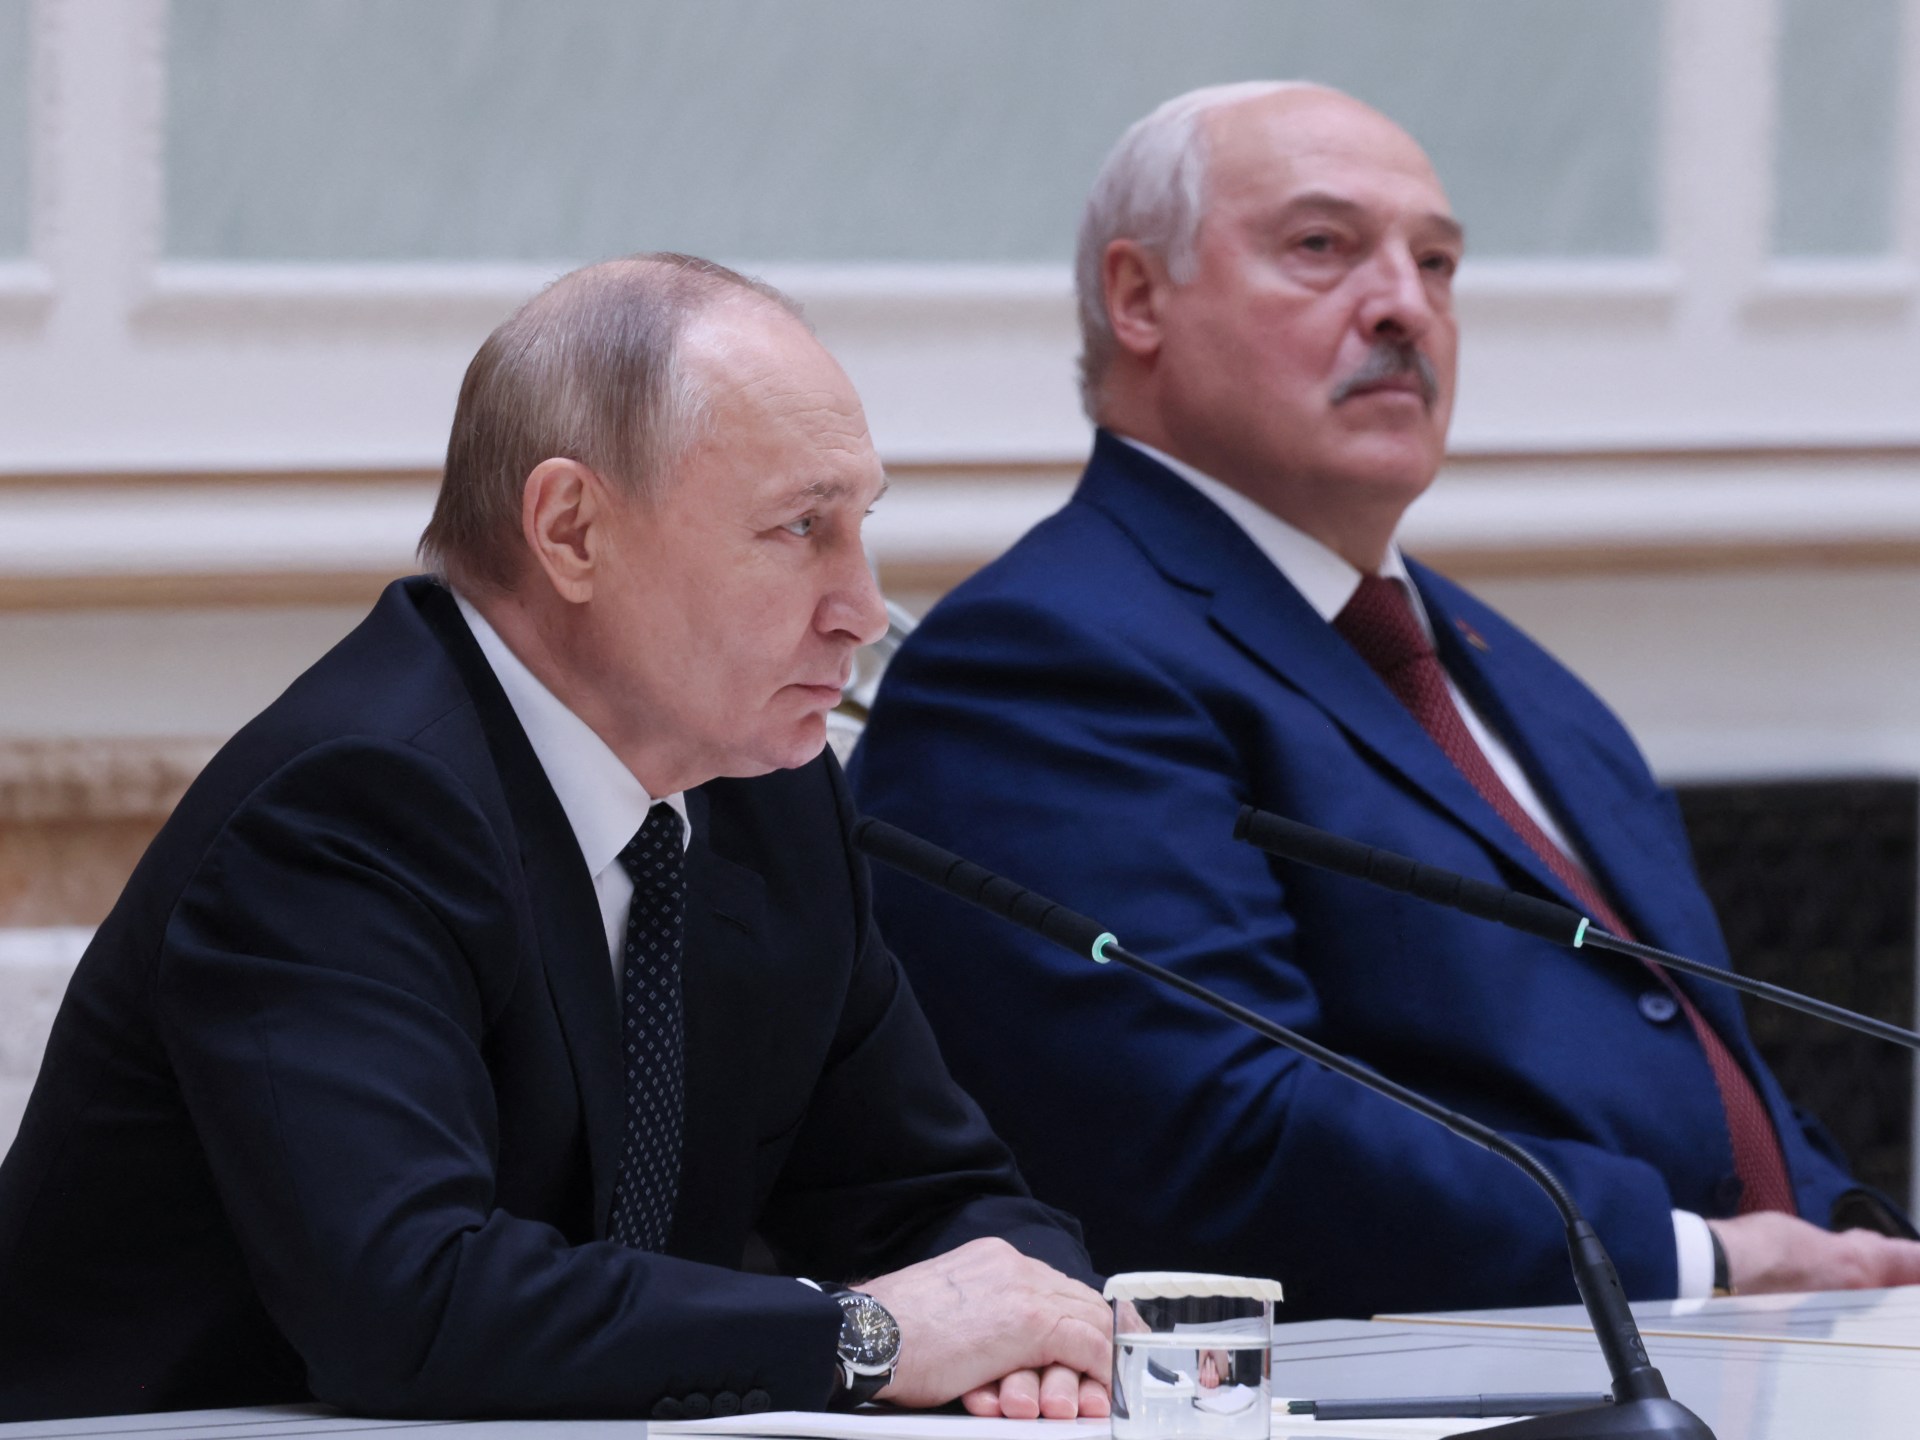 بوتين يحدد شروطه للتفاوض مع أوكرانيا.. ما هي؟ | أخبار – البوكس نيوز